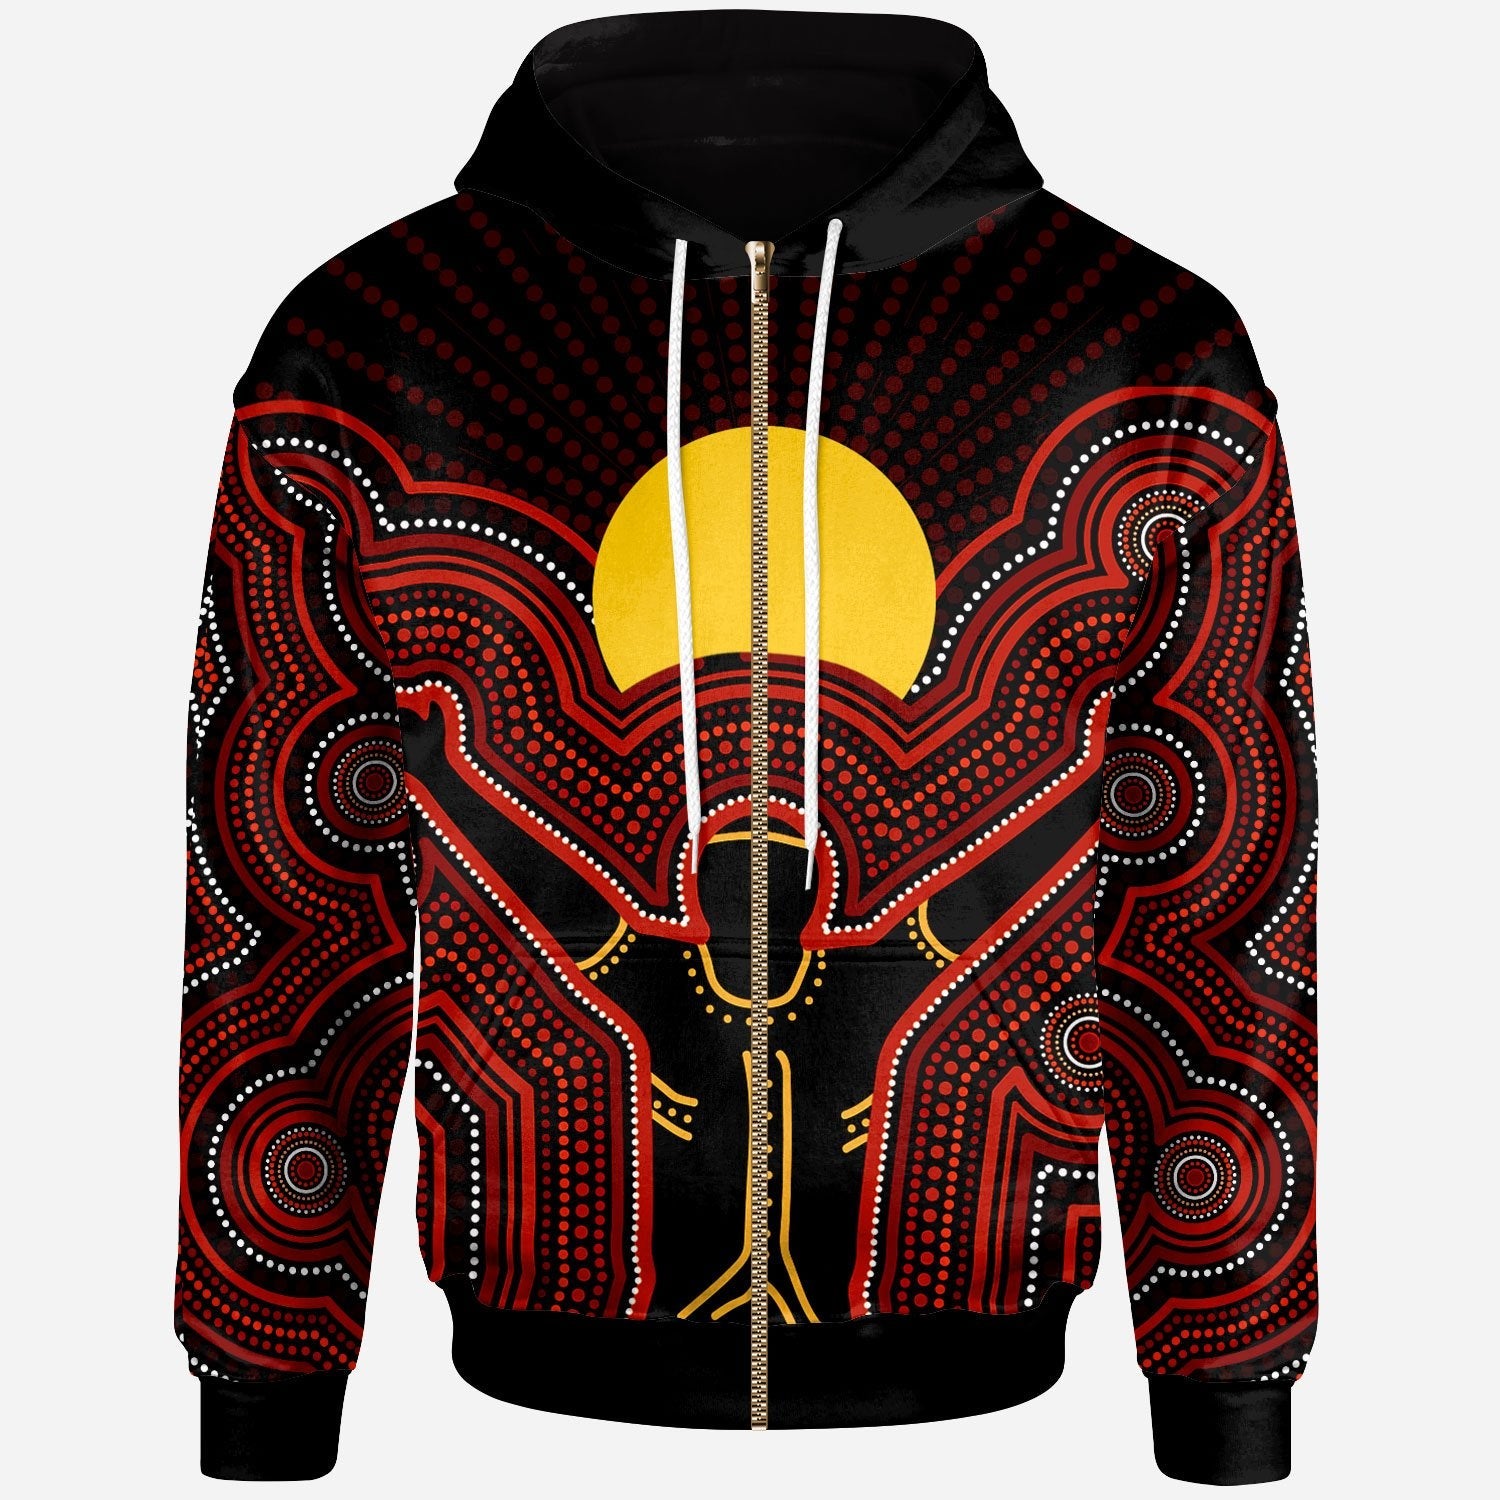 aboriginal-zip-up-hoodie-the-sun-always-shines